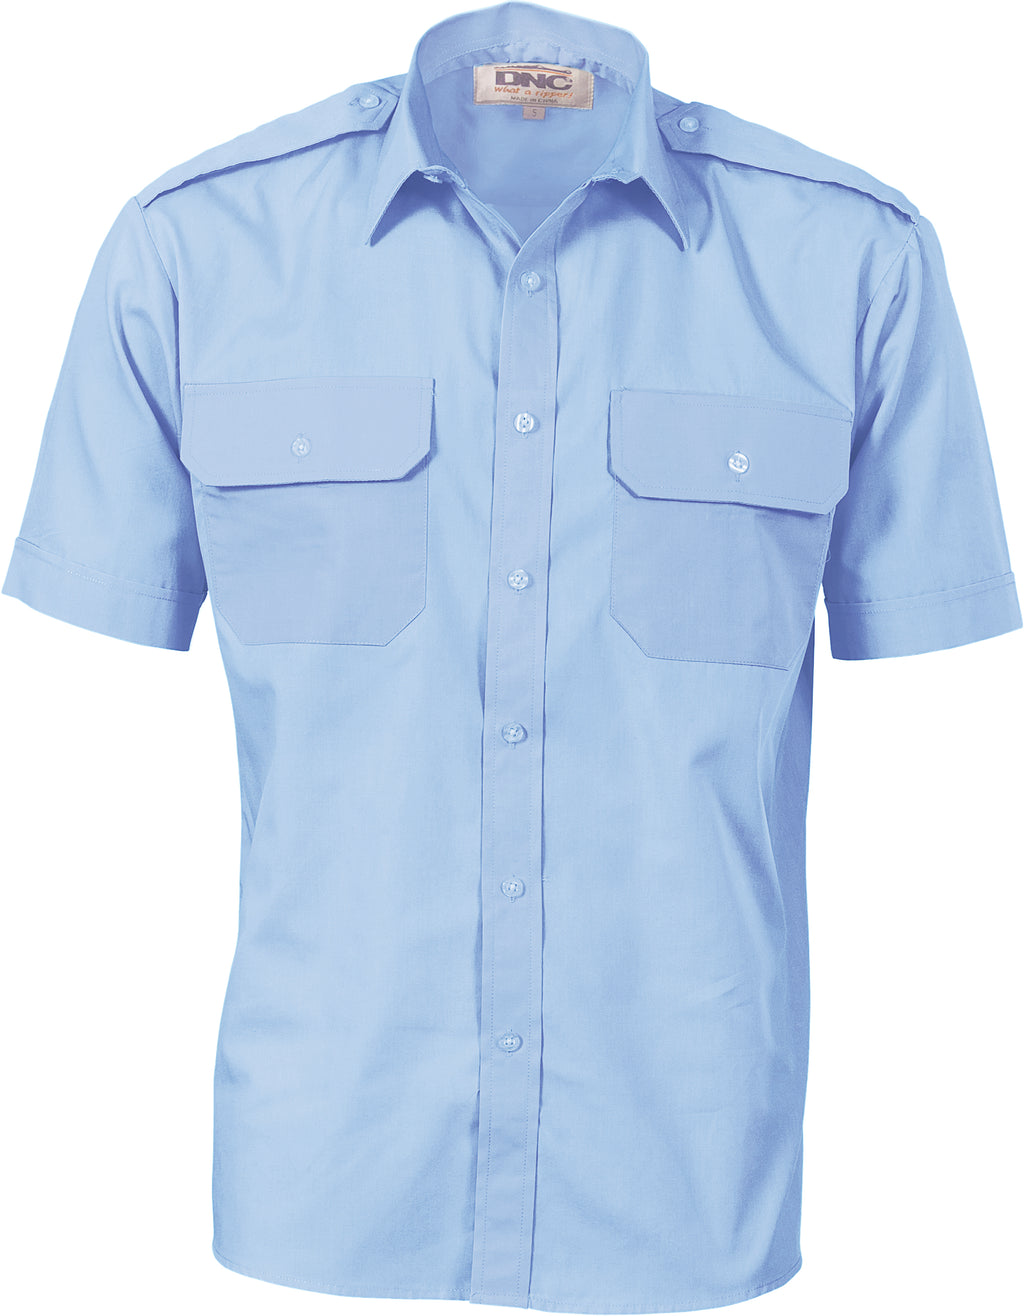 3213 - Epaulette Polyester/Cotton Work Shirt - Short Sleeve